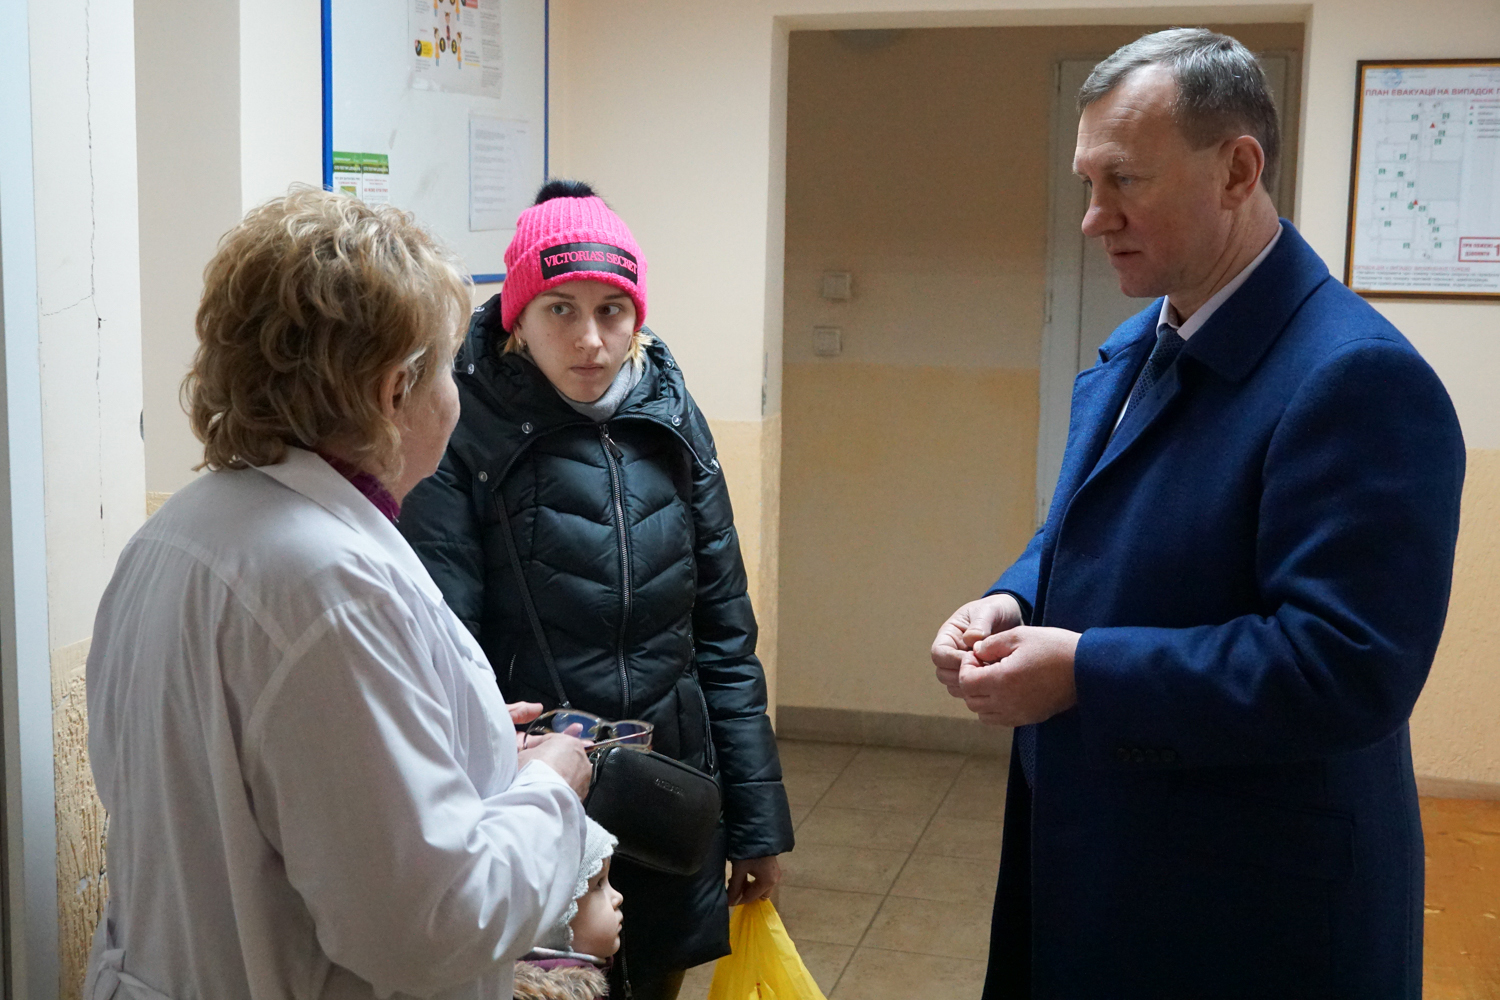 Як працюється медикам, які послуги гарантовані пацієнтам – міський голова Богдан Андріїв цікавився в одній із сімейних амбулаторій  Ужгорода